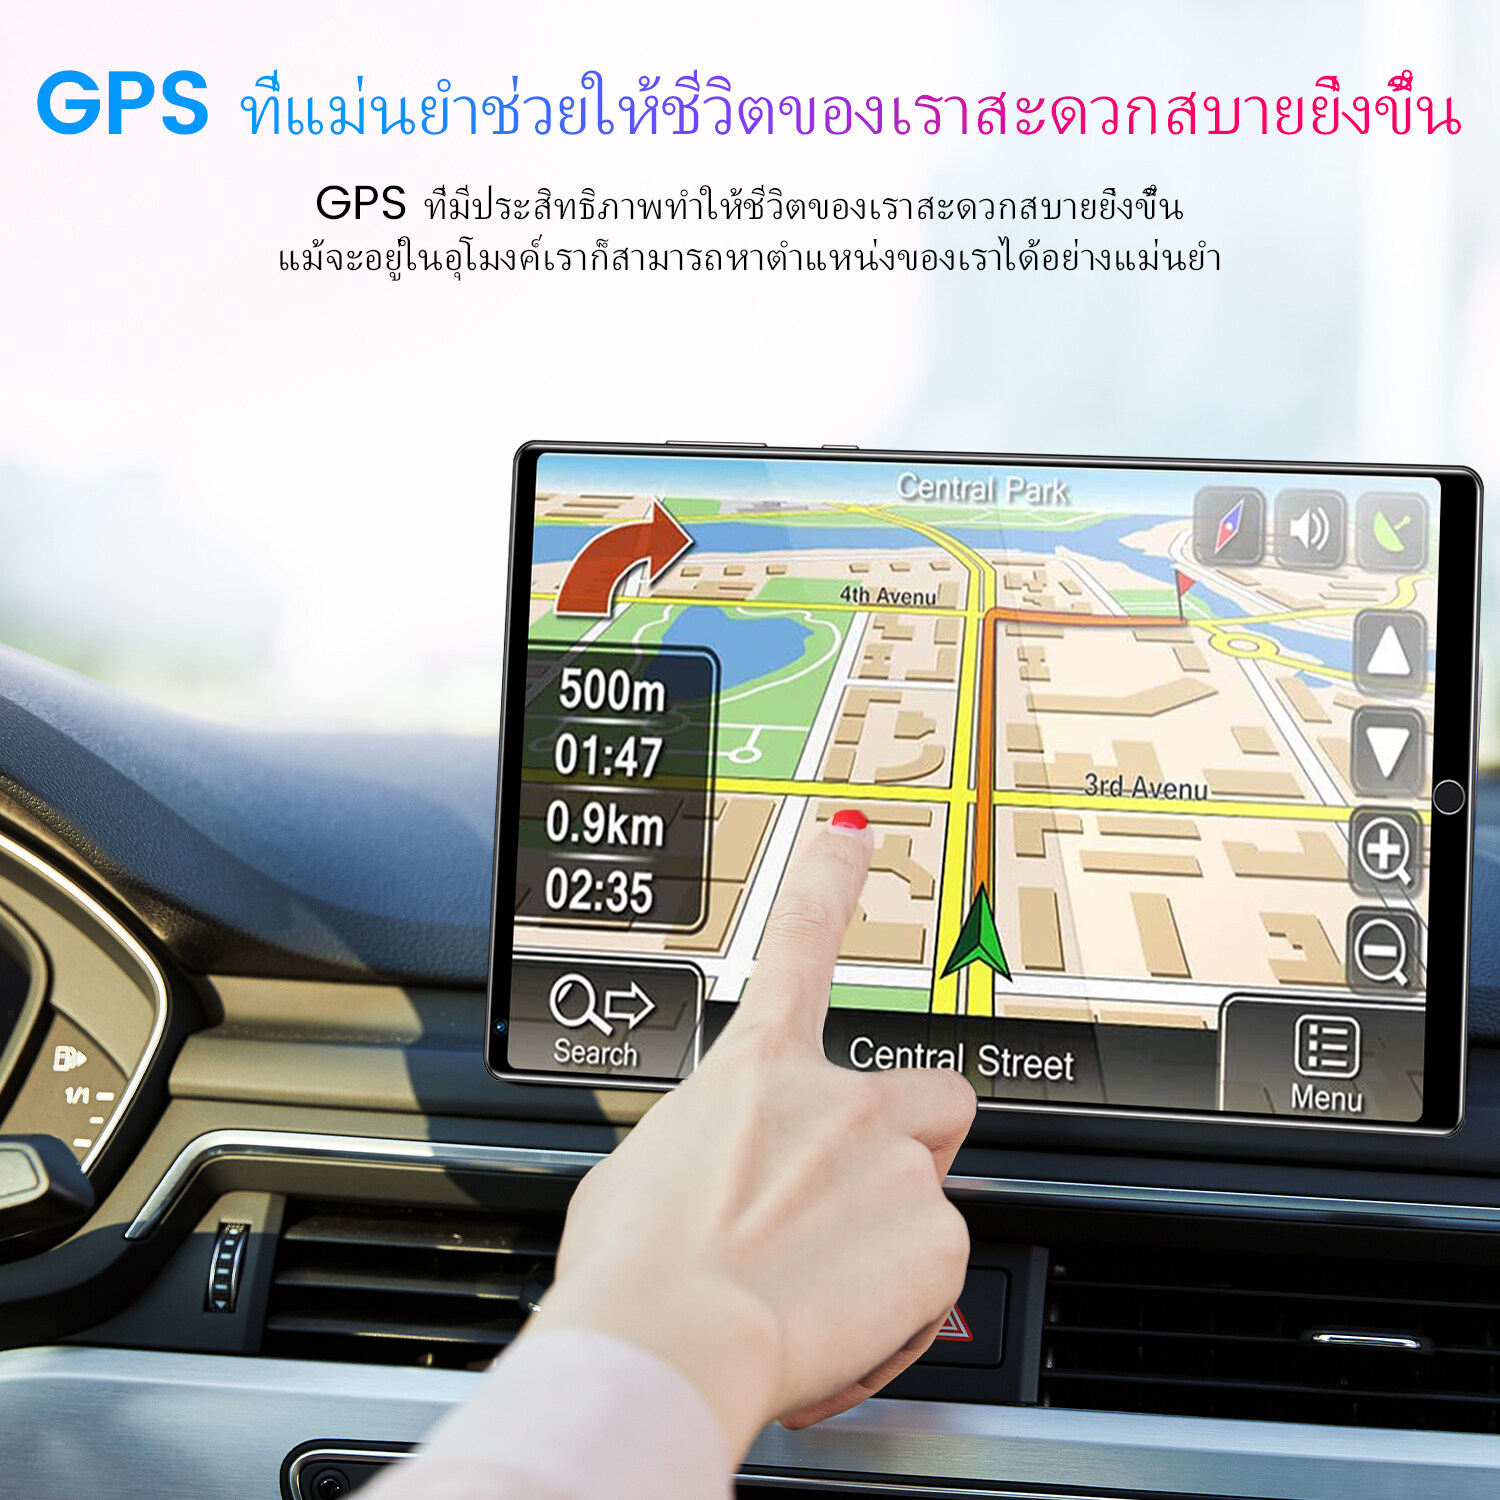 มุมมองเพิ่มเติมของสินค้า （ลดเคลียร์สต๊อก）Realmi Thailand Store ❗ แท็บเล็ตมีปากา แท็บเล็ต Android 9.0 แท็ปเล็ตหน้าจอใหญ่10.1นิ้ว 8G + 256G แท็บเล็ตโทรได้5g กล้องความละเอียดสูง 3ตัว NEW Tablets แท็บเล็ต สามารถให้ความบันเทิง ฟังเพลง ทำงาน รองรับการโทรผ่าน 4G แท็บเล็ต รองรับ 2 ซิม